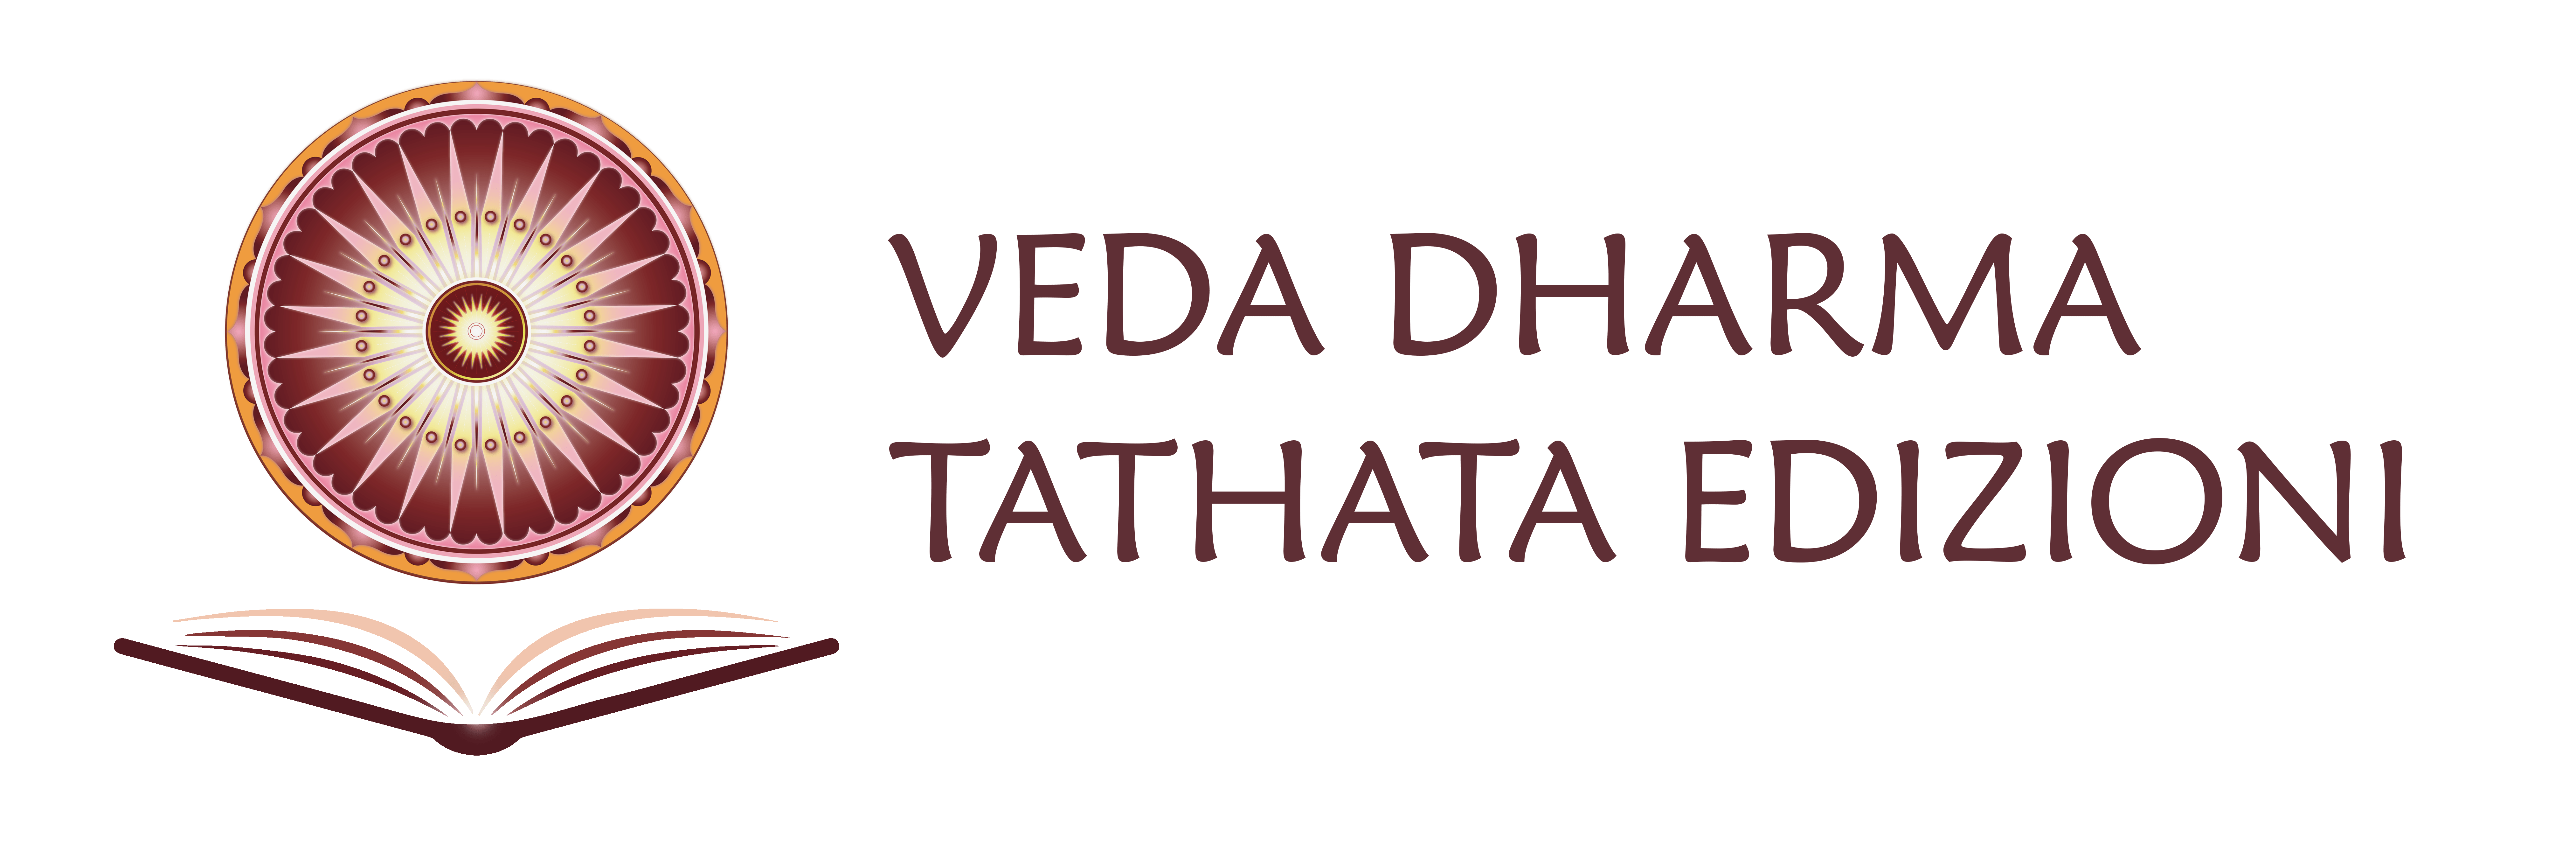 Veda Dharma